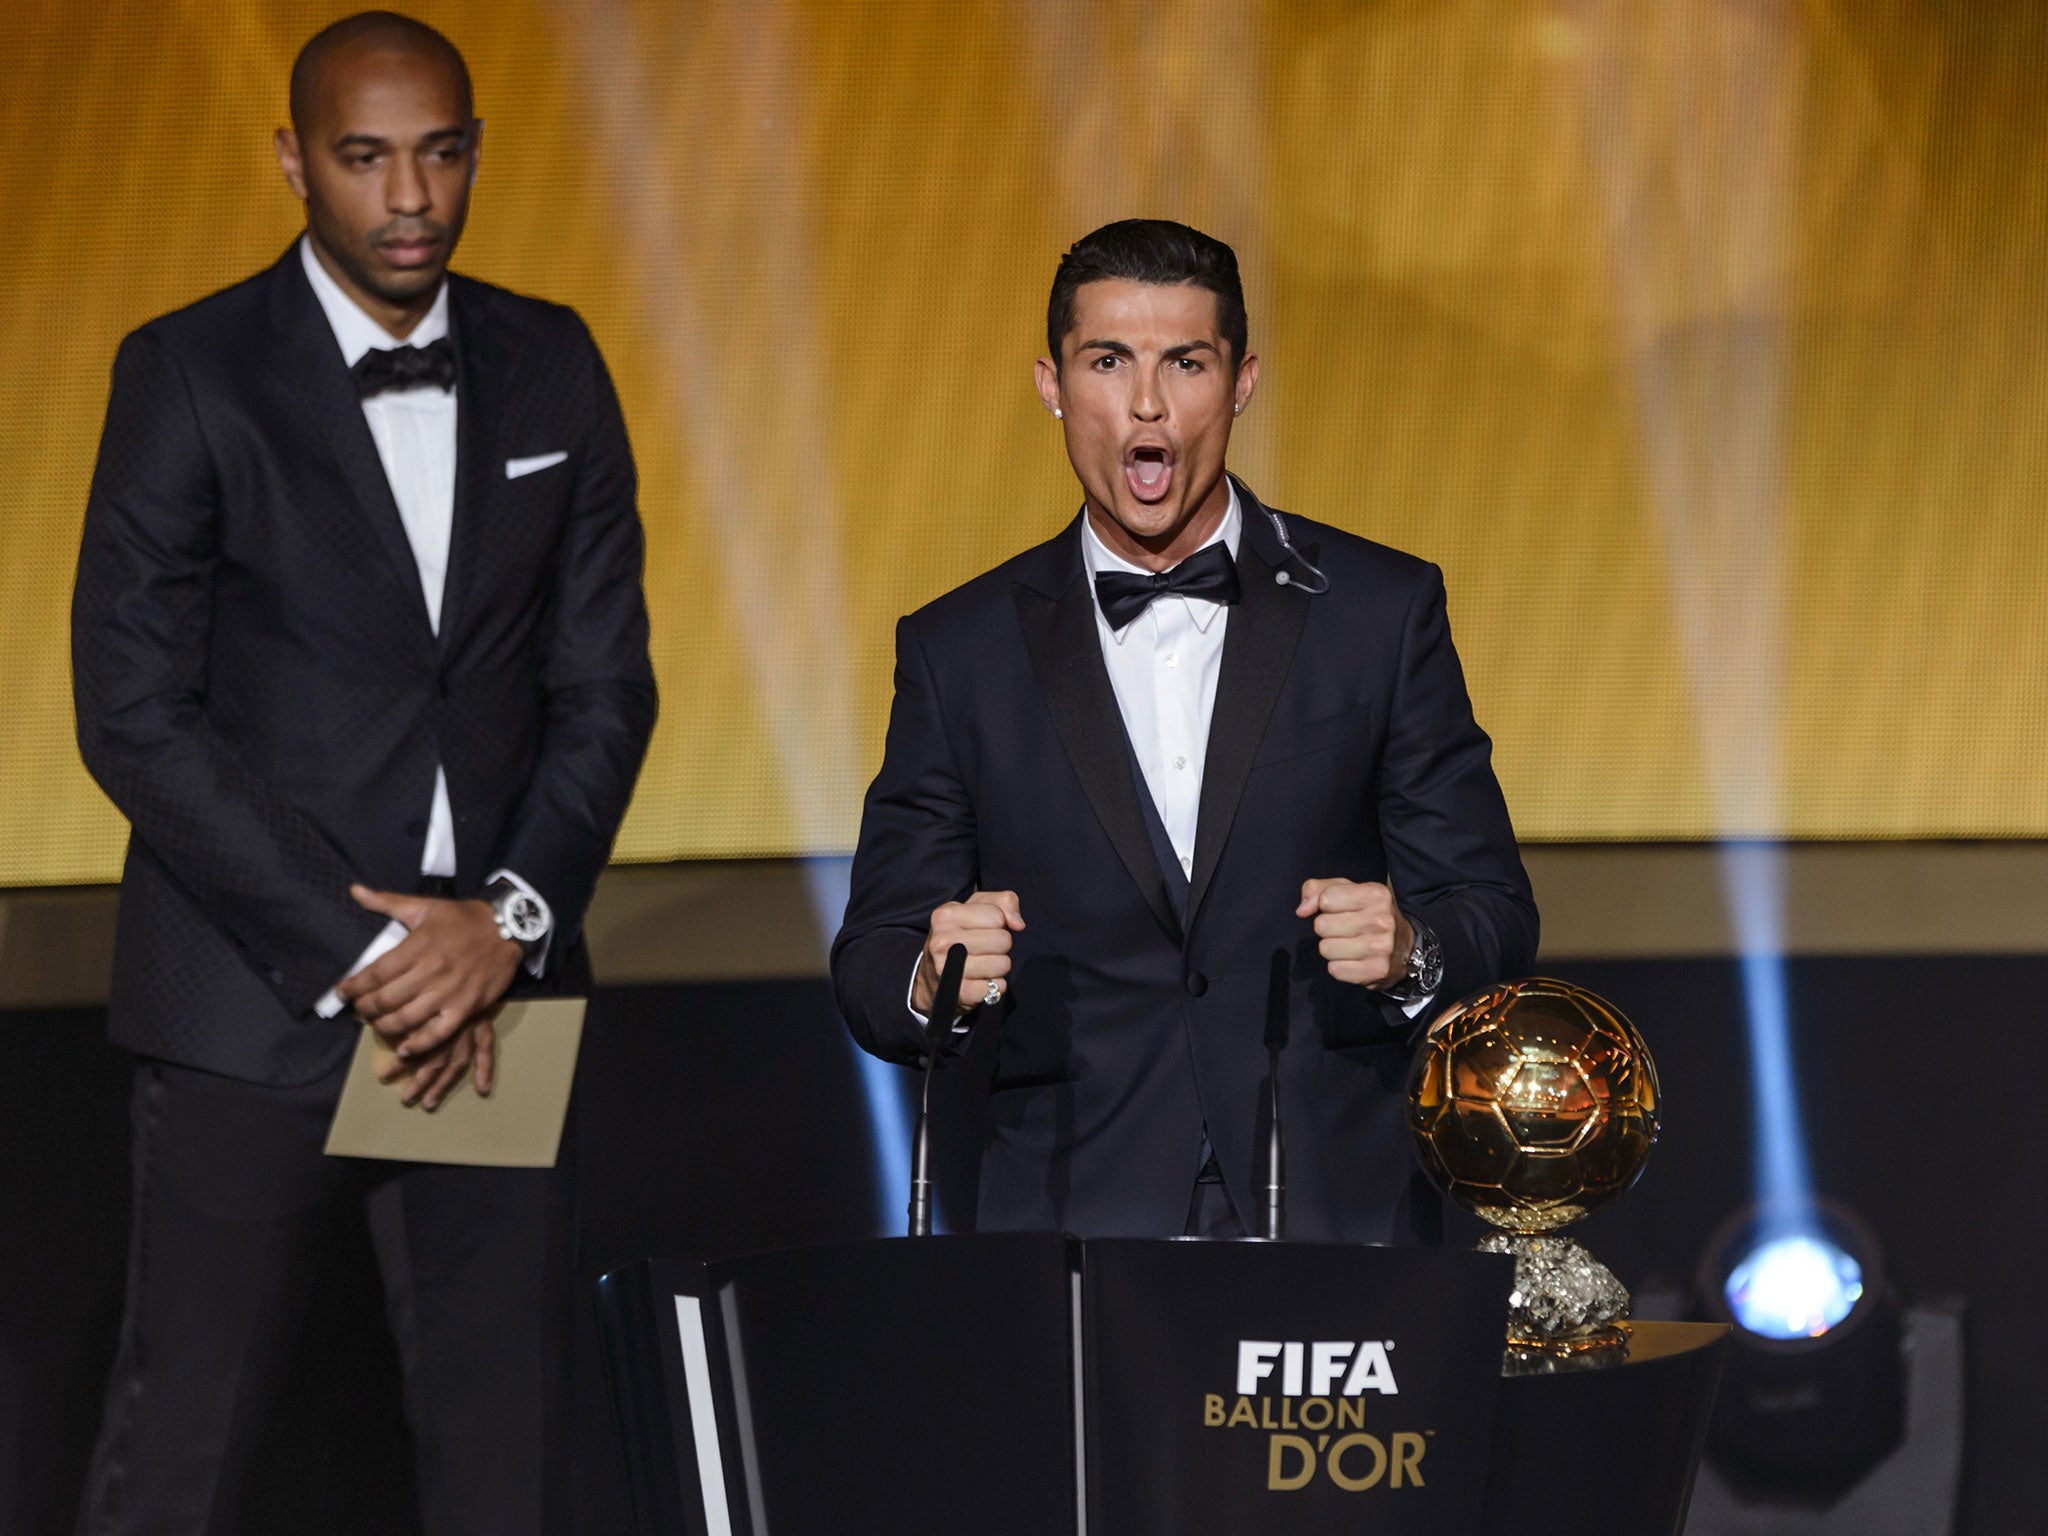 Cristiano Ronaldo retained the Ballon d'Or in 2014